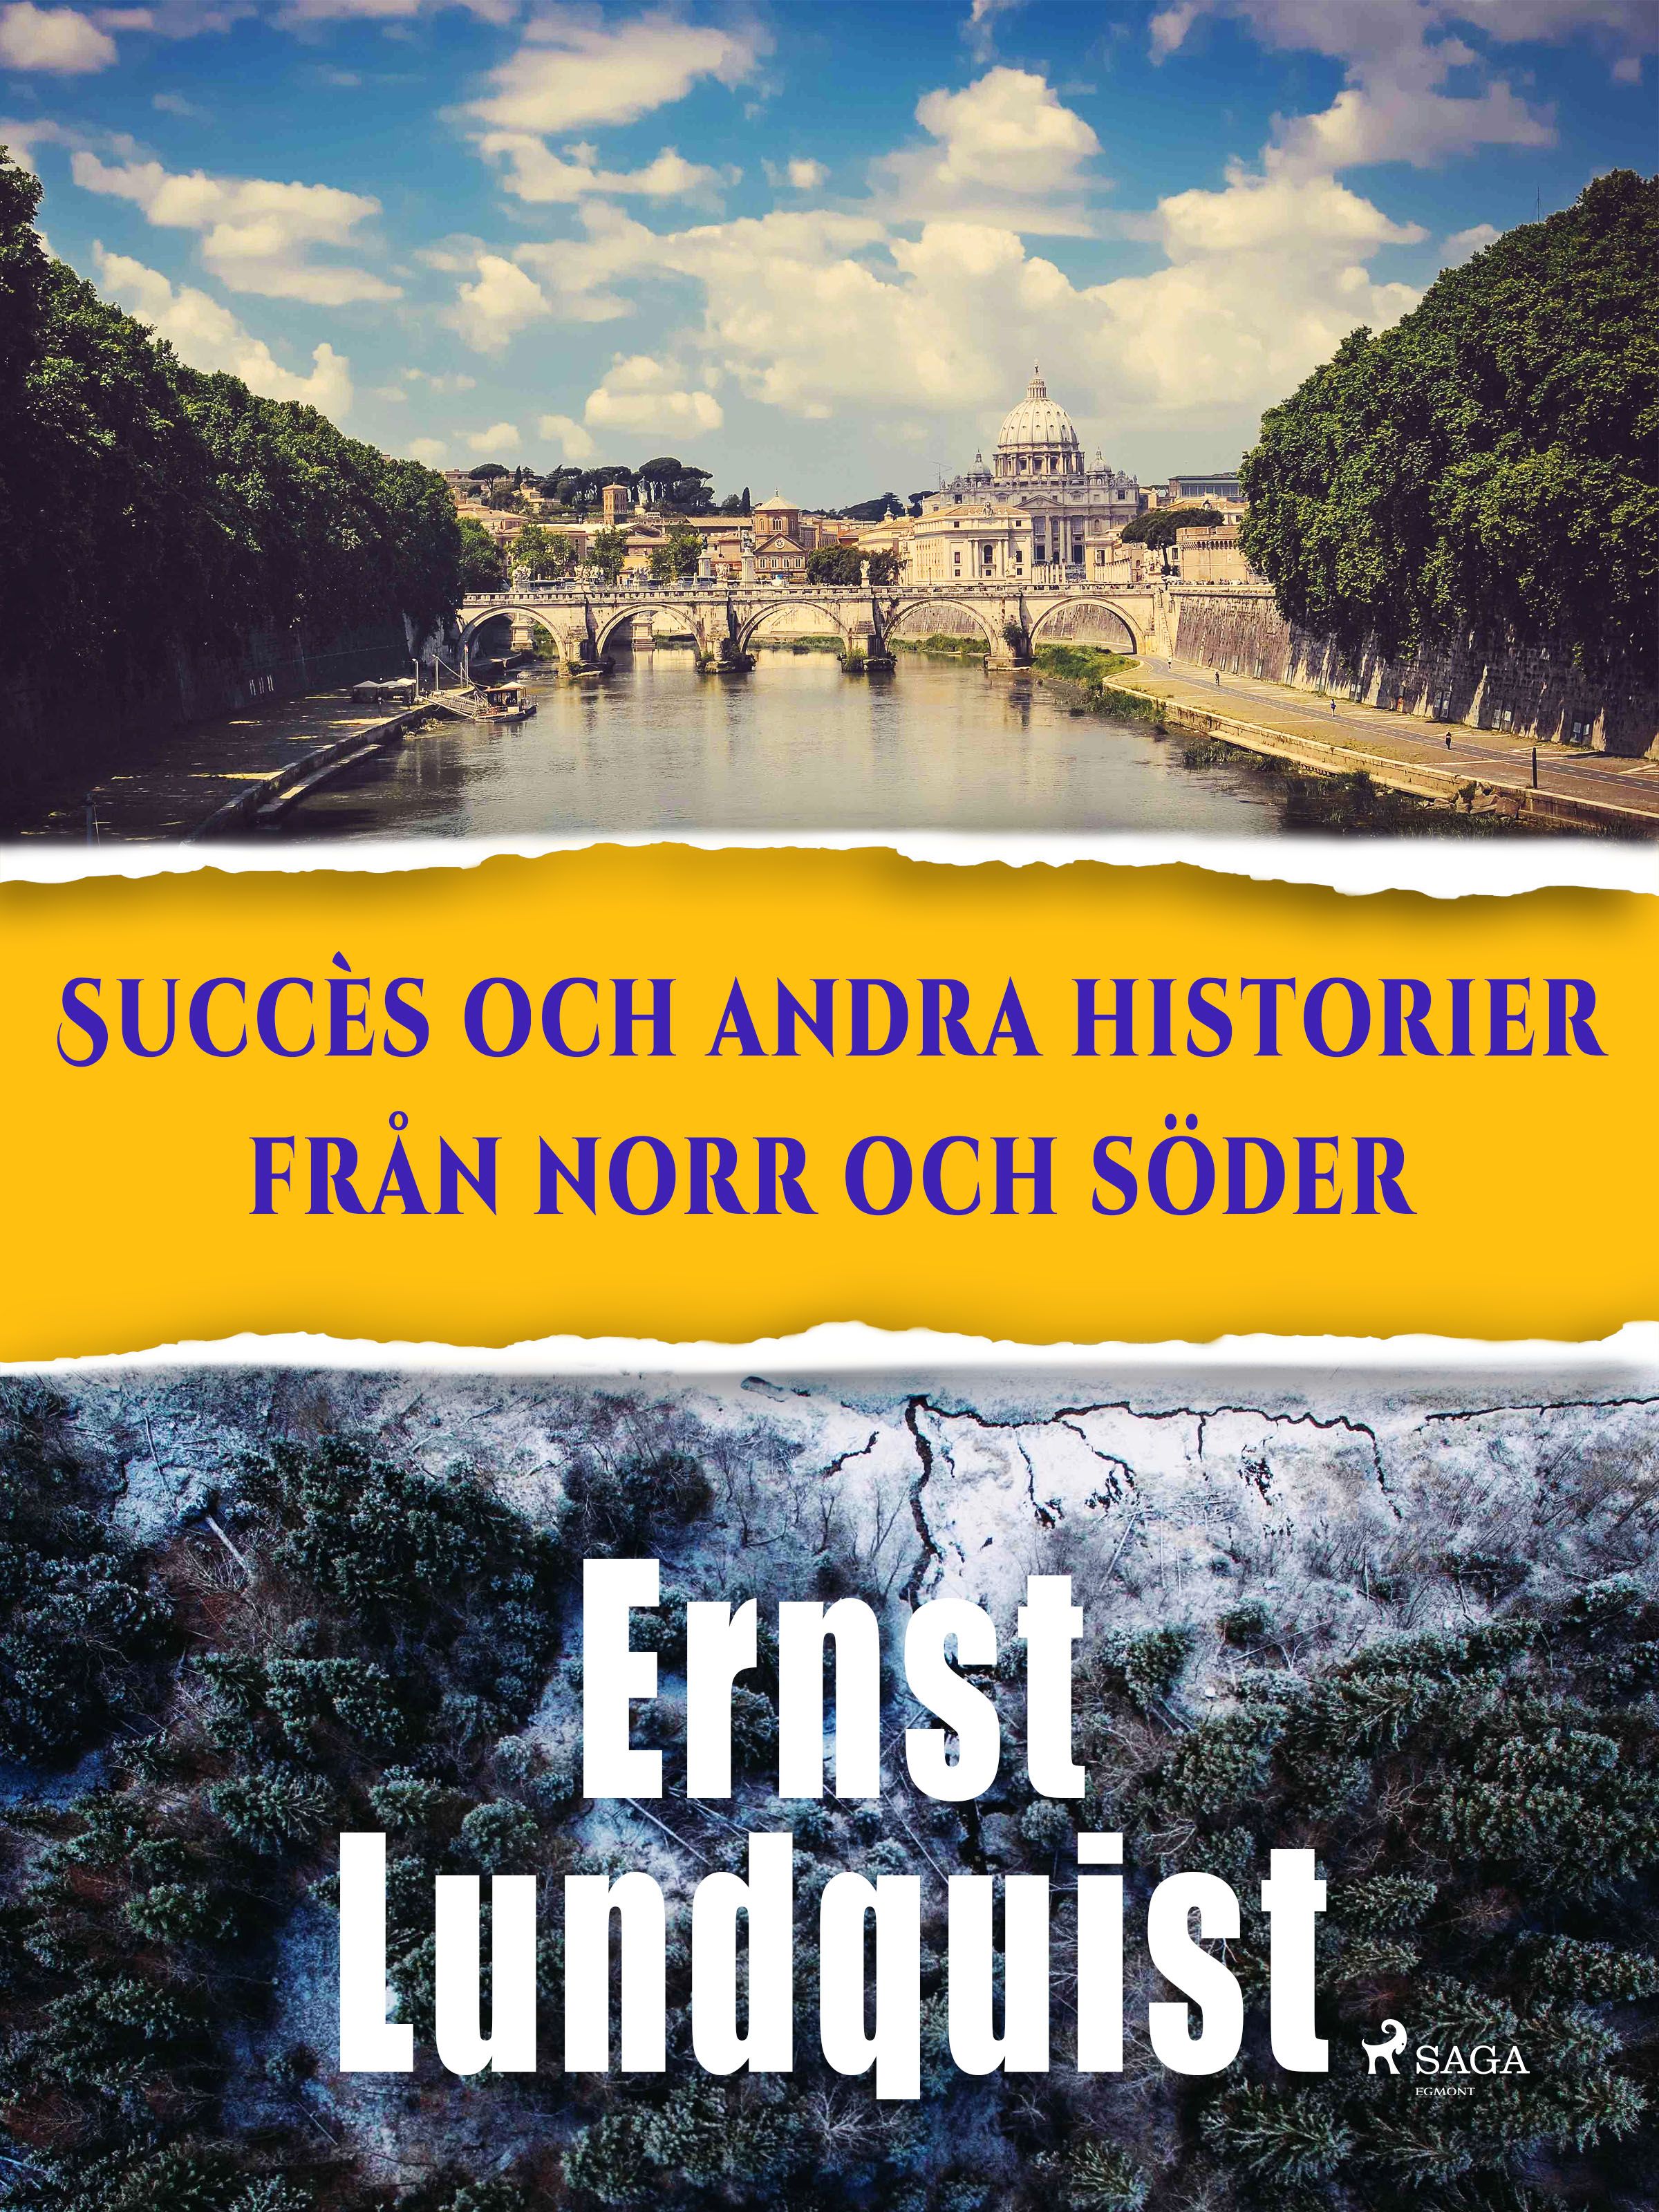 Succès och andra historier från norr och söder., e-bog af Ernst Lundquist